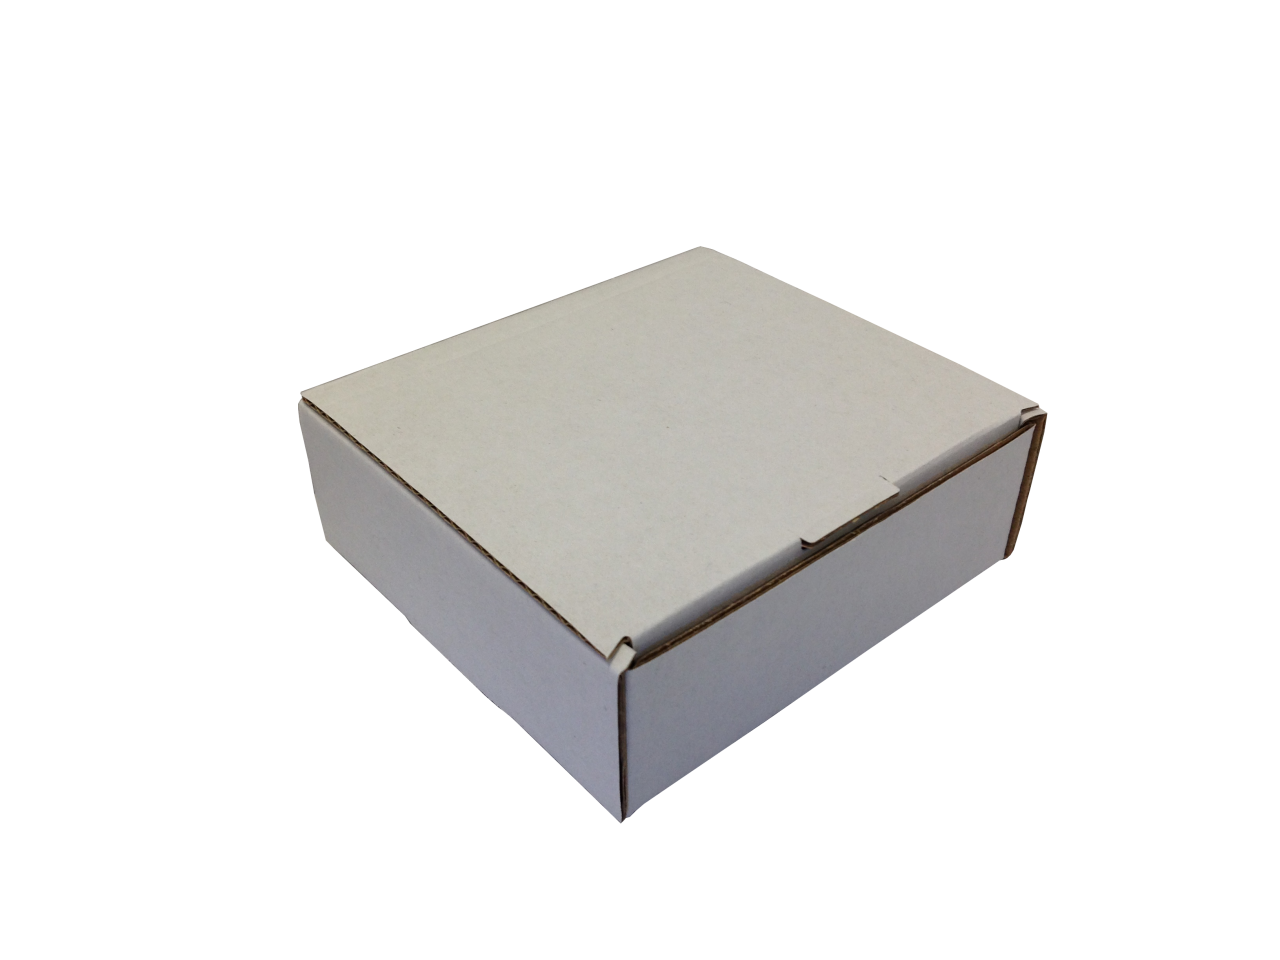 Kis méretű önzáró tároló doboz (80x75x28 mm) Kis méretű, önzáródó, hullámkarton tároló doboz felnyitható tetővel

Felhasználás: 
Ajándéktárgyak, szerszámok, szerelvények, egyéb kisméretű tárgyak tárolására alkalmas kisméretű önzáródó hullámkarton tároló doboz.

Méret: 80 x 75 x 28 mm - hullámkarton tároló doboz
Kivitel: Fefco 0421

Anyag: mikrohullám karton papír
Színek: 
alap: barna, fehér
színes: bordó, fekete, kék, zöld